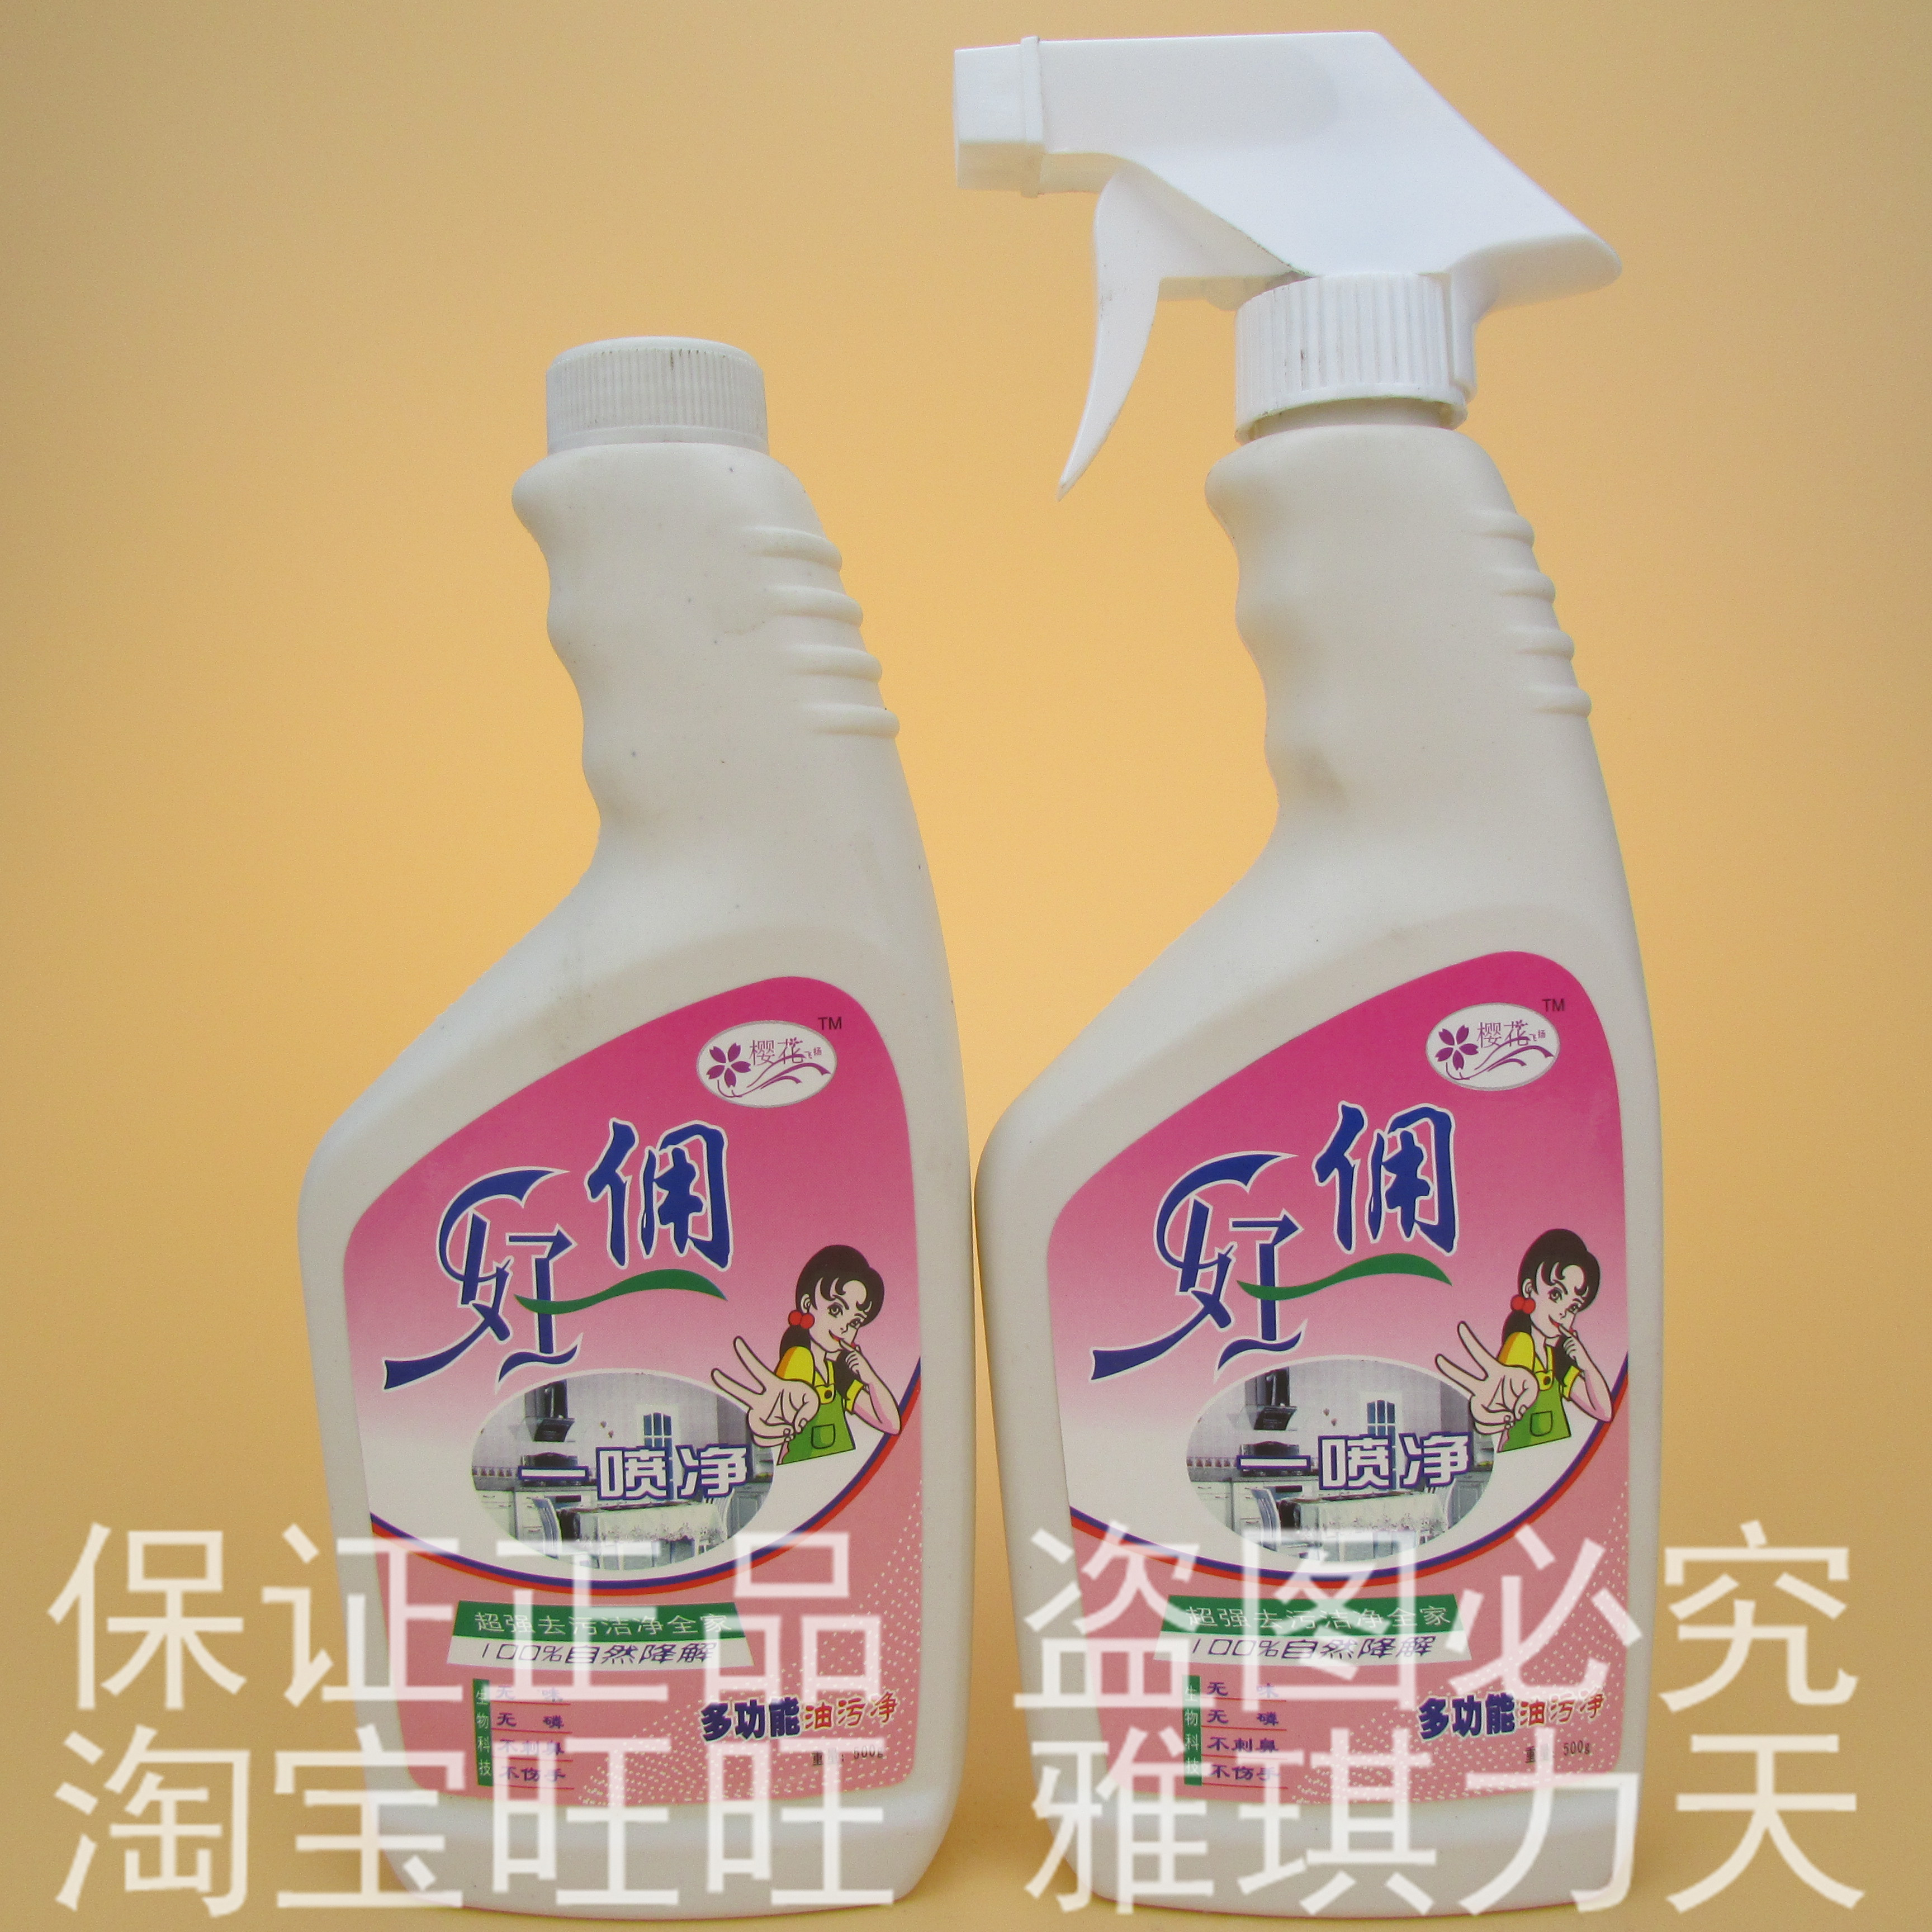 【官方直销】 好佣多功能油污净 清洗剂 清洁剂 组合装